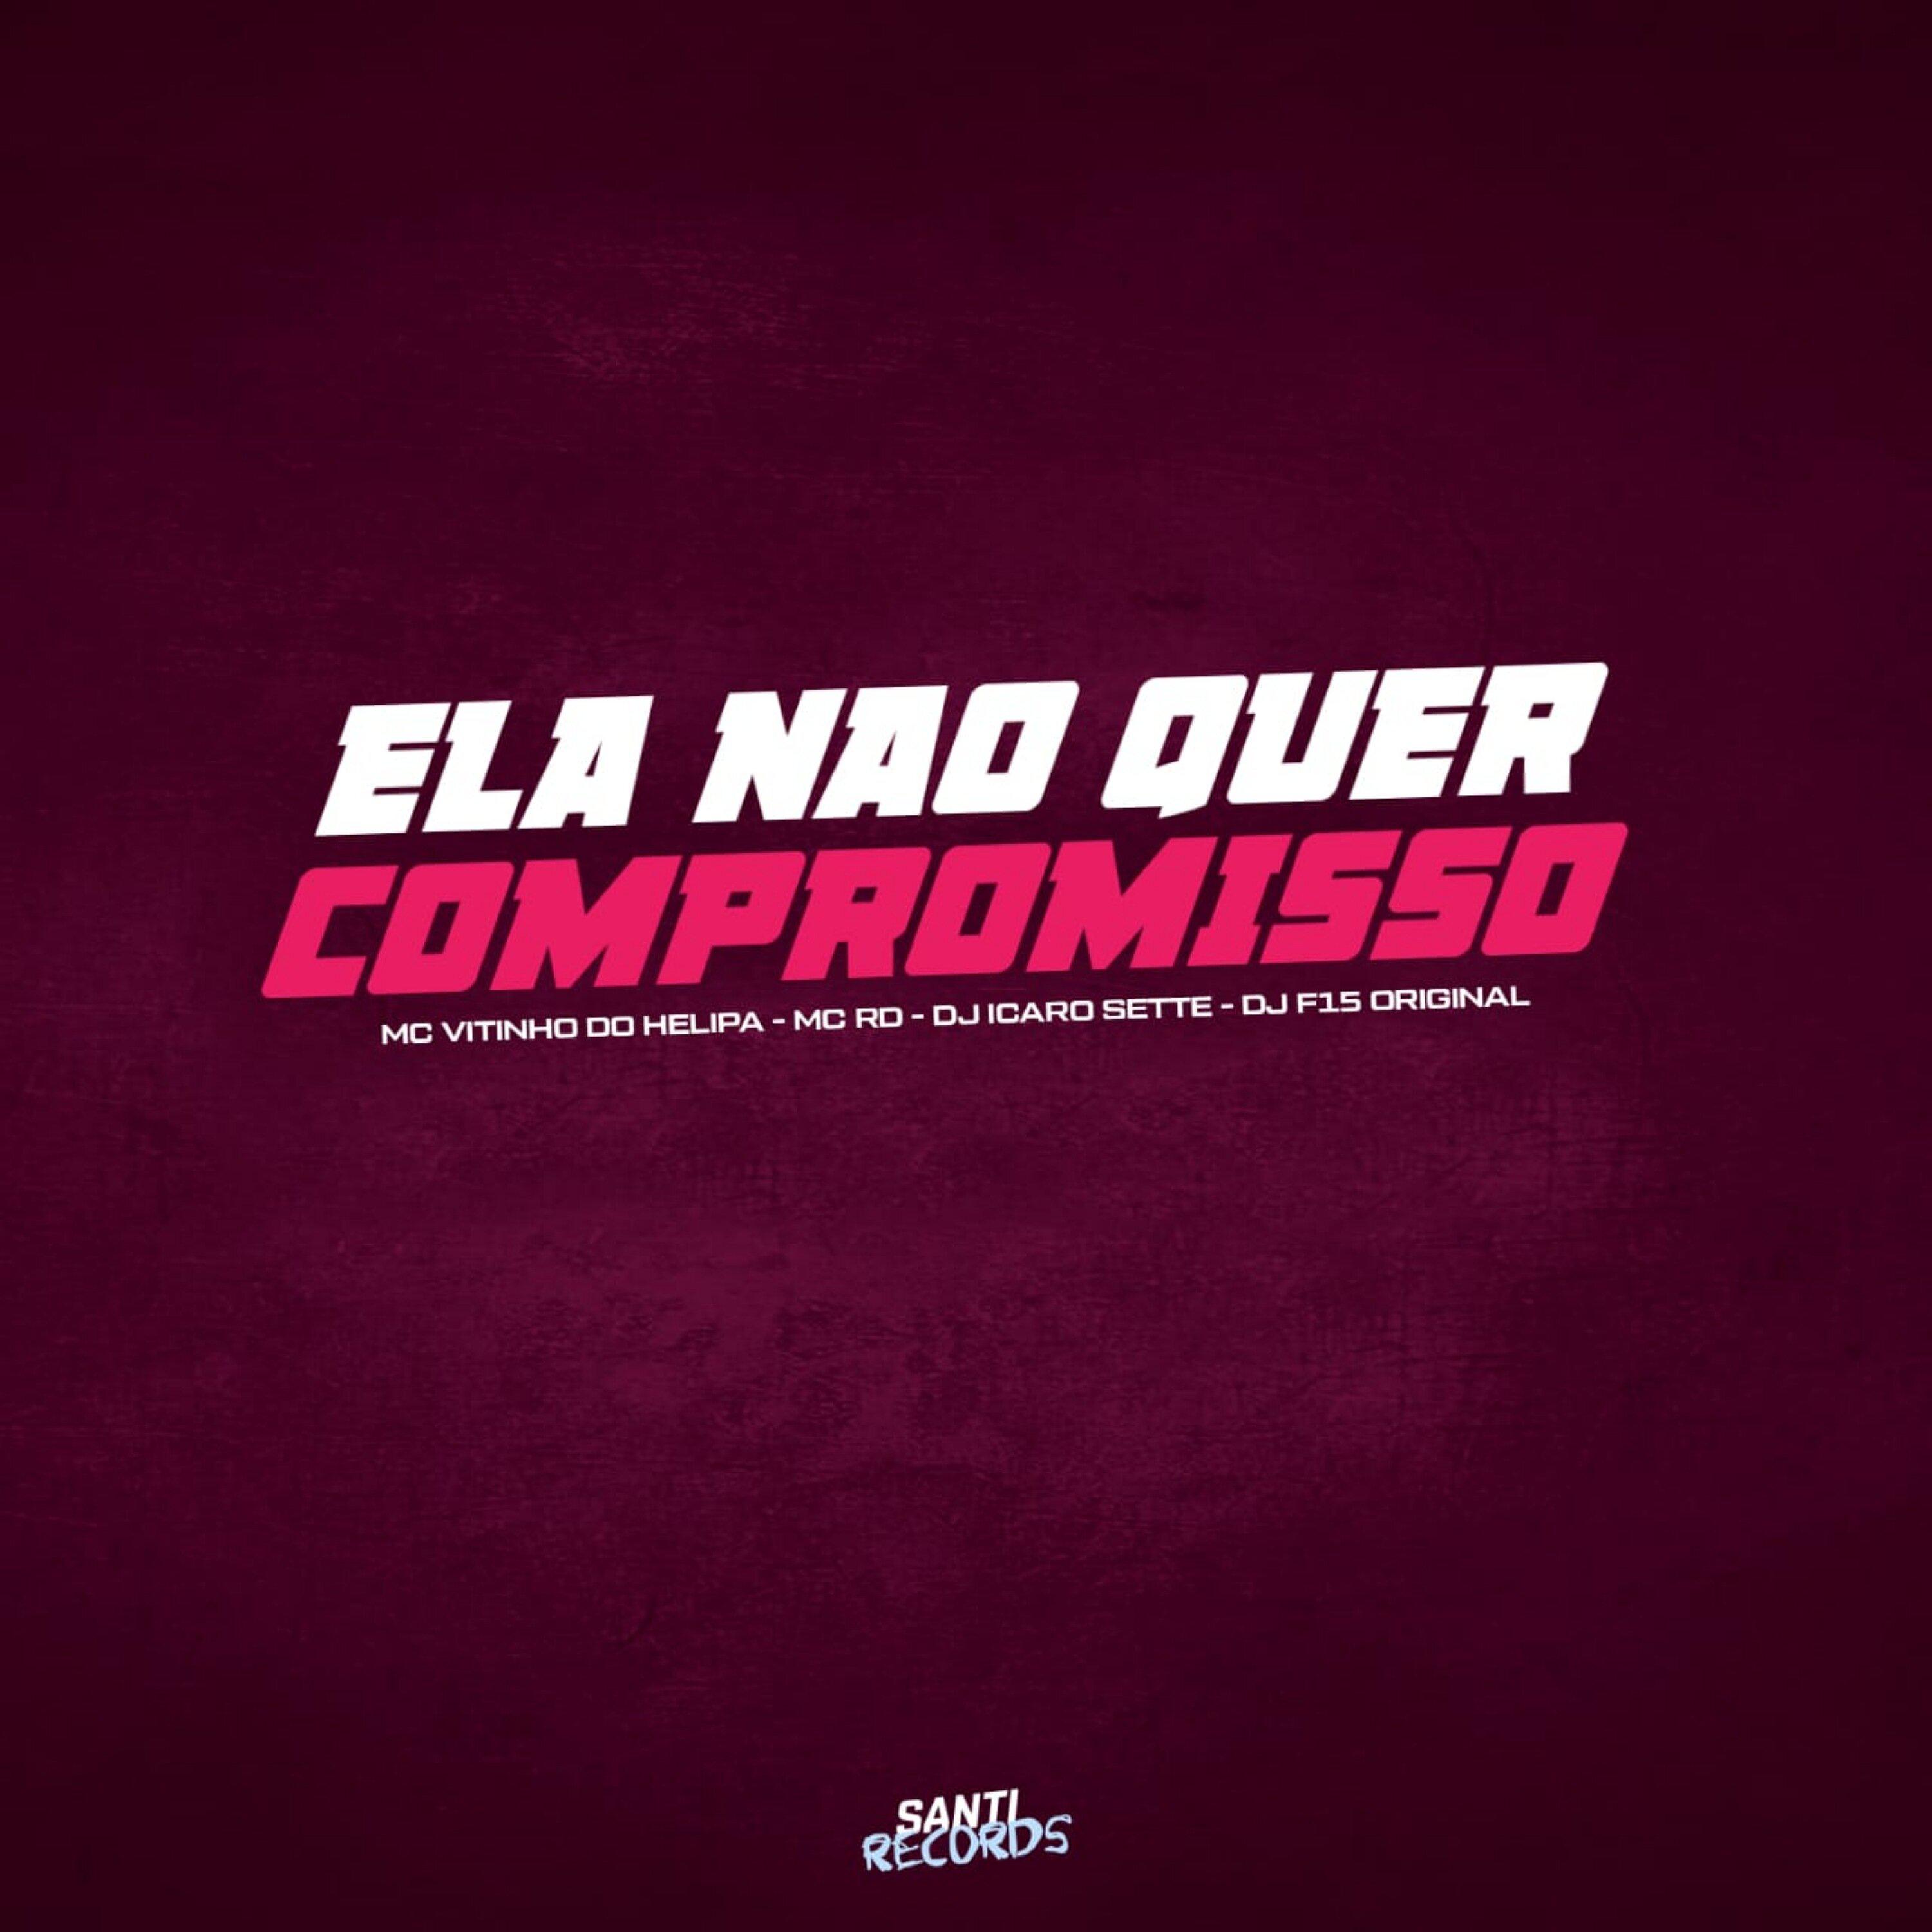 DJ Icaro Sette - Ela Não Quer Compromisso (feat. dj f15 original)